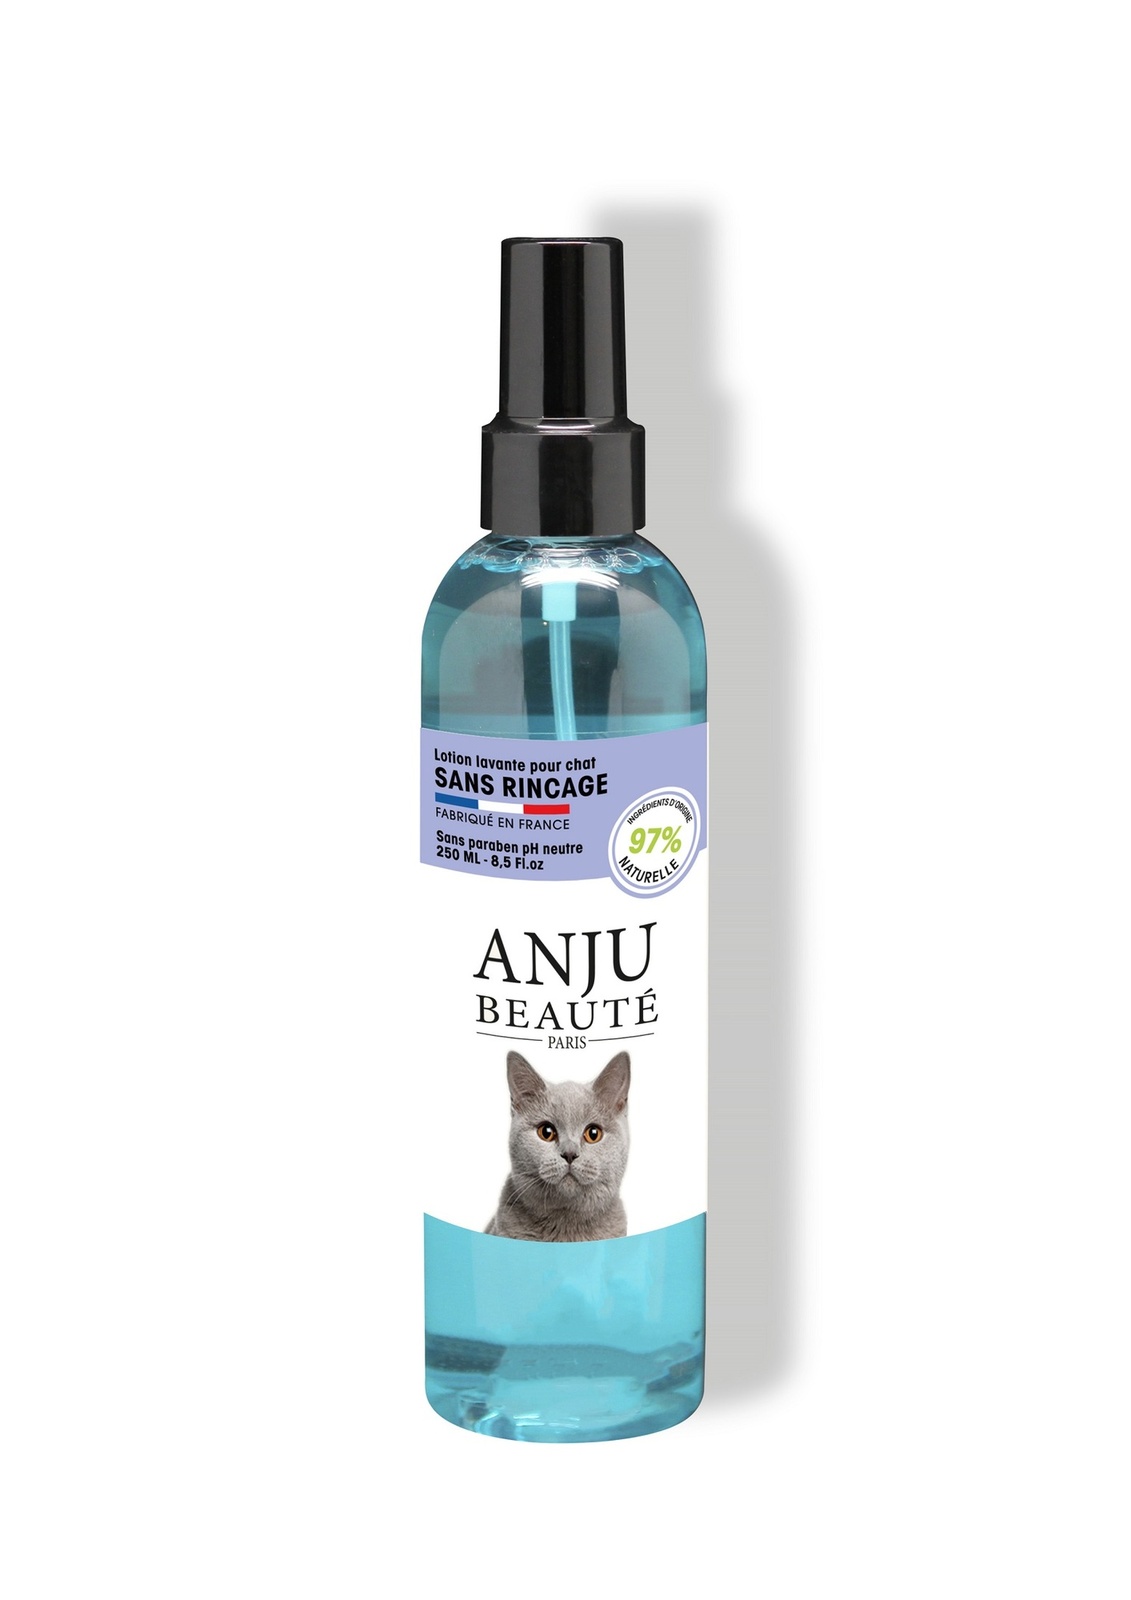 Anju Beaute Anju Beaute очищающий спрей для кошек без ополаскивания, 250 мл (250 г)